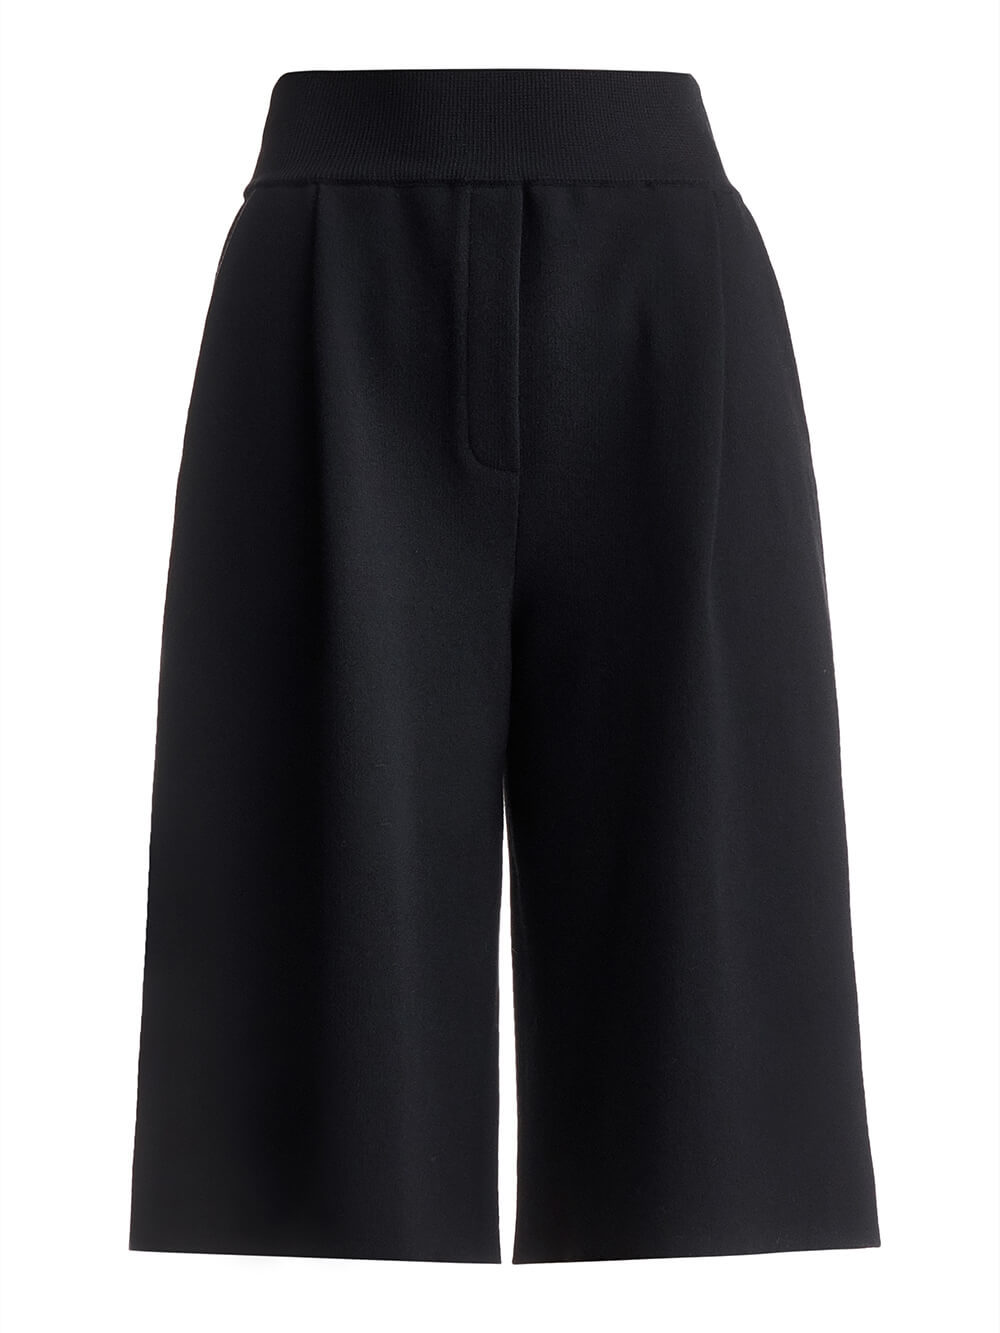 Женская юбка-брюки черного цвета из шерсти - фото 1